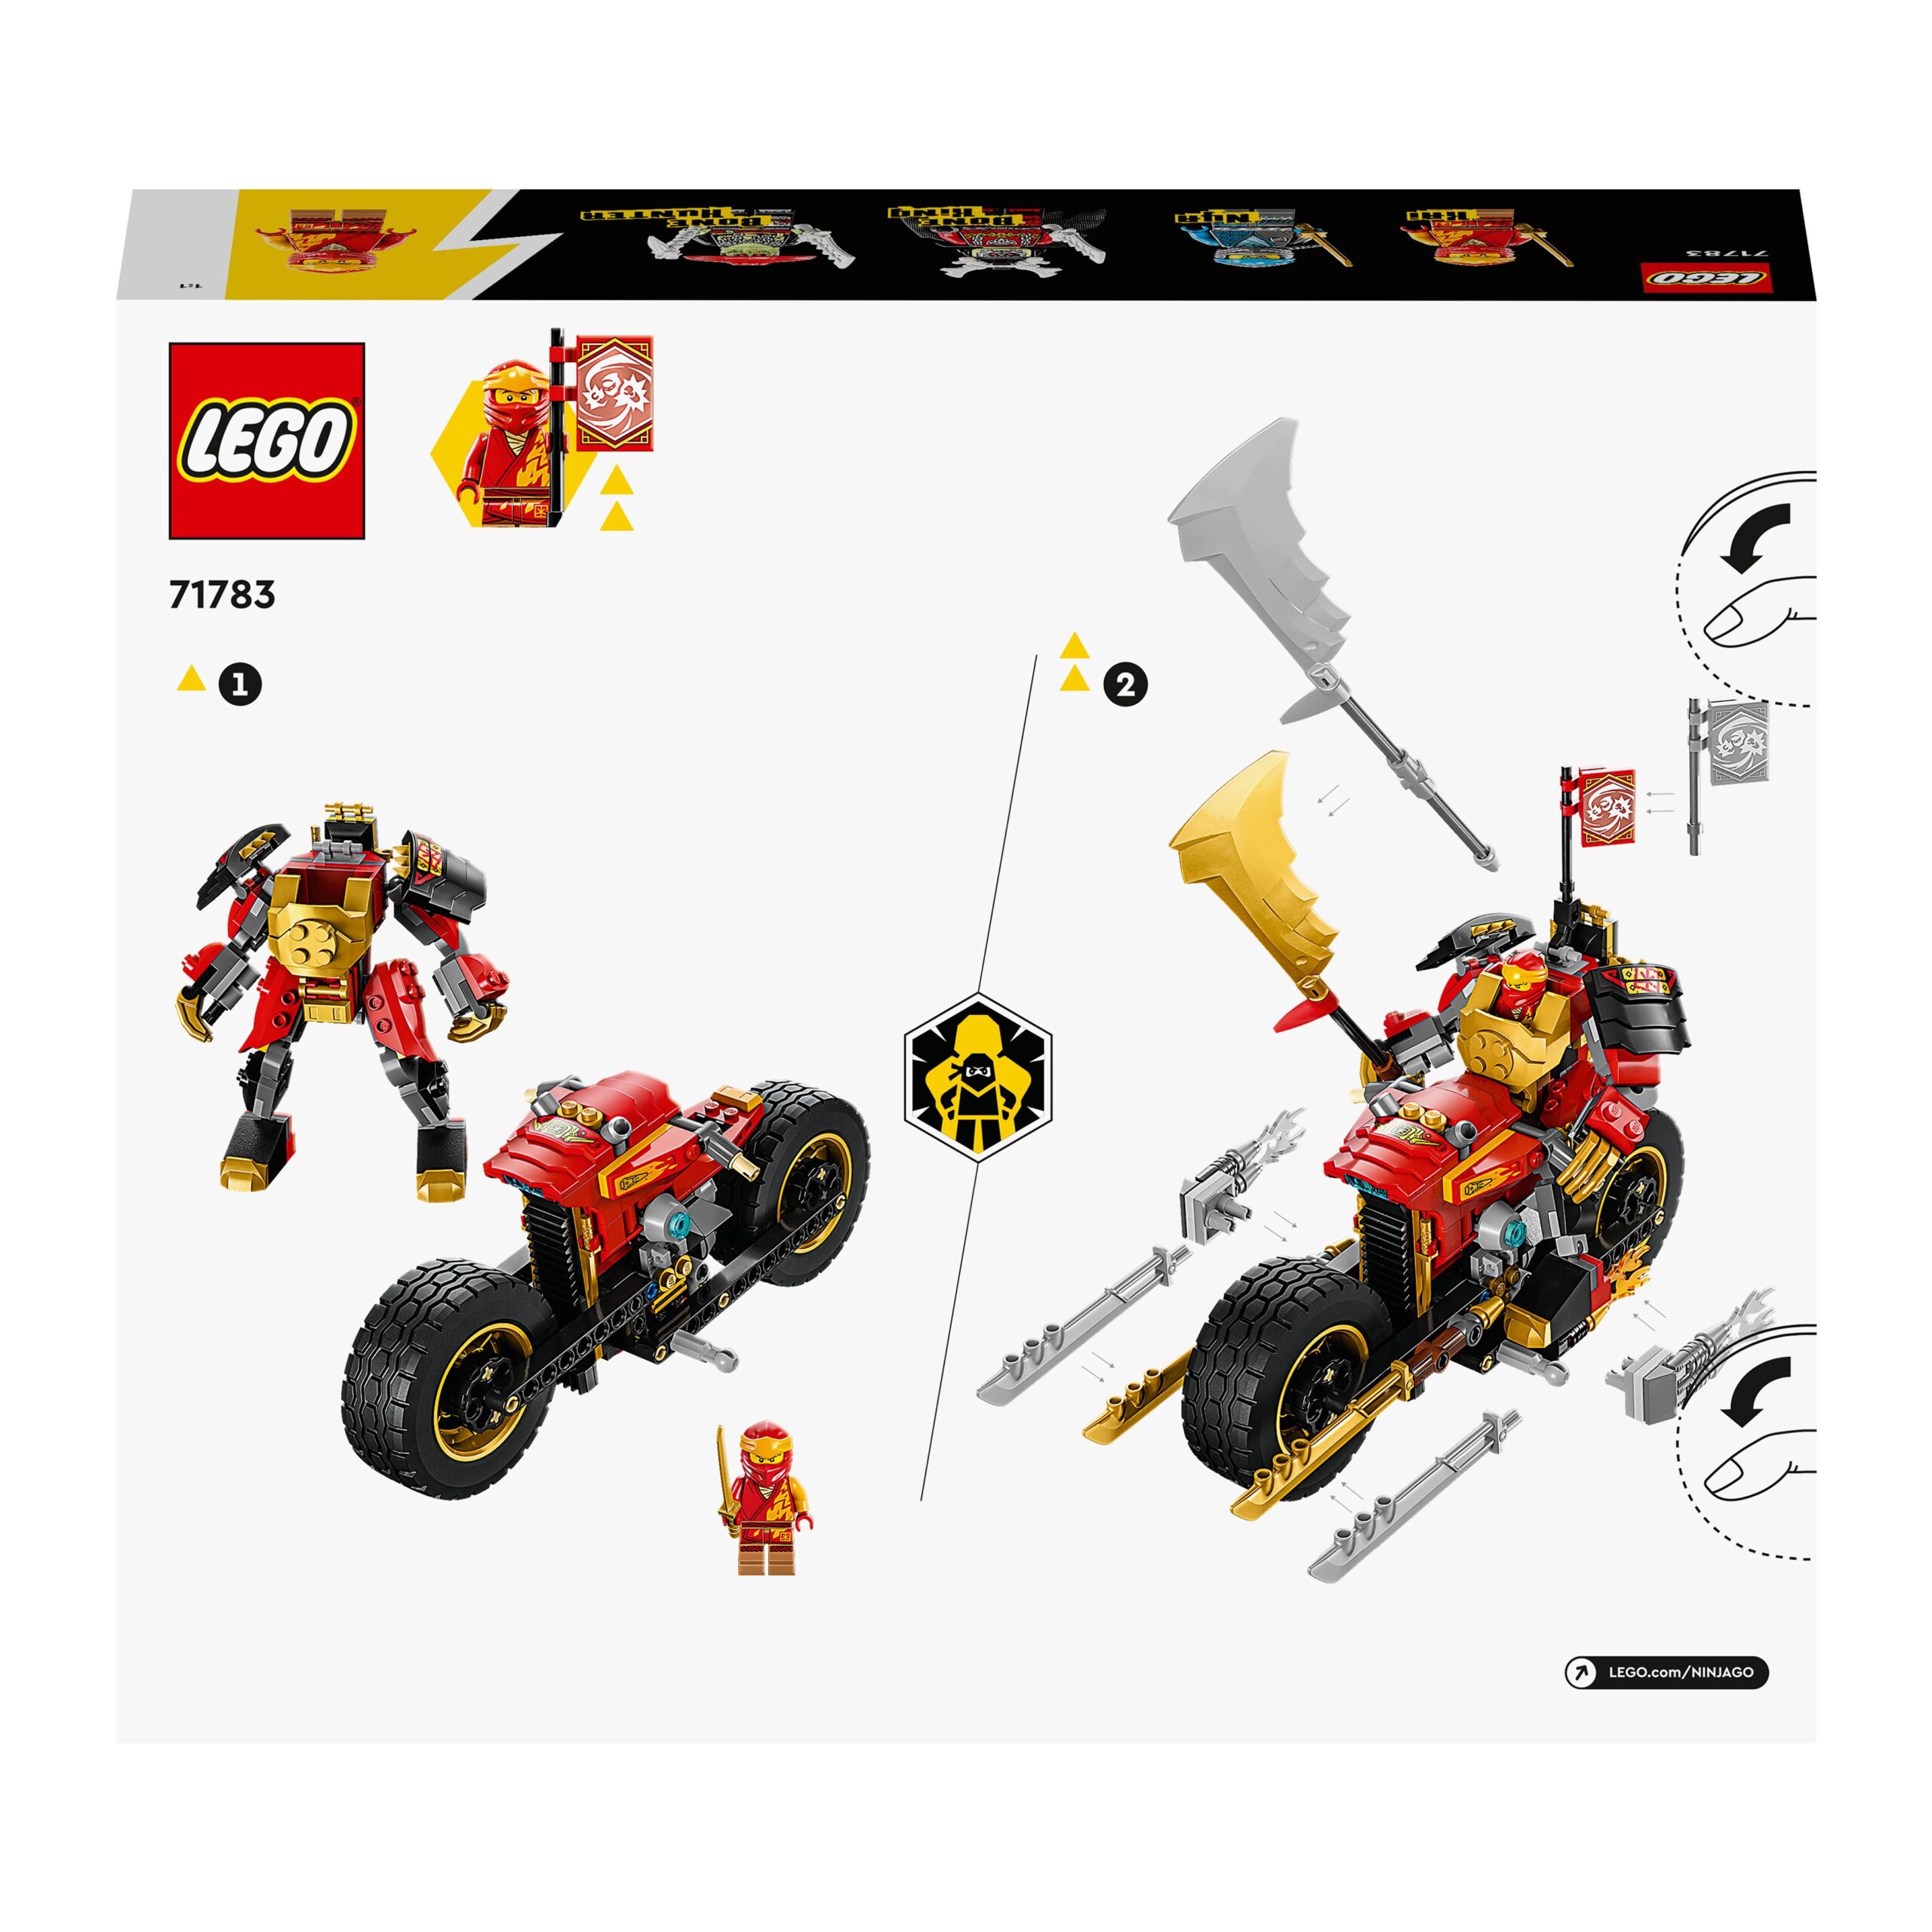 Lego ninjago 71783 mech rider di kai - evolution, moto giocattolo con action figure e 2 minifigure, giochi per bambini 7+ - LEGO NINJAGO